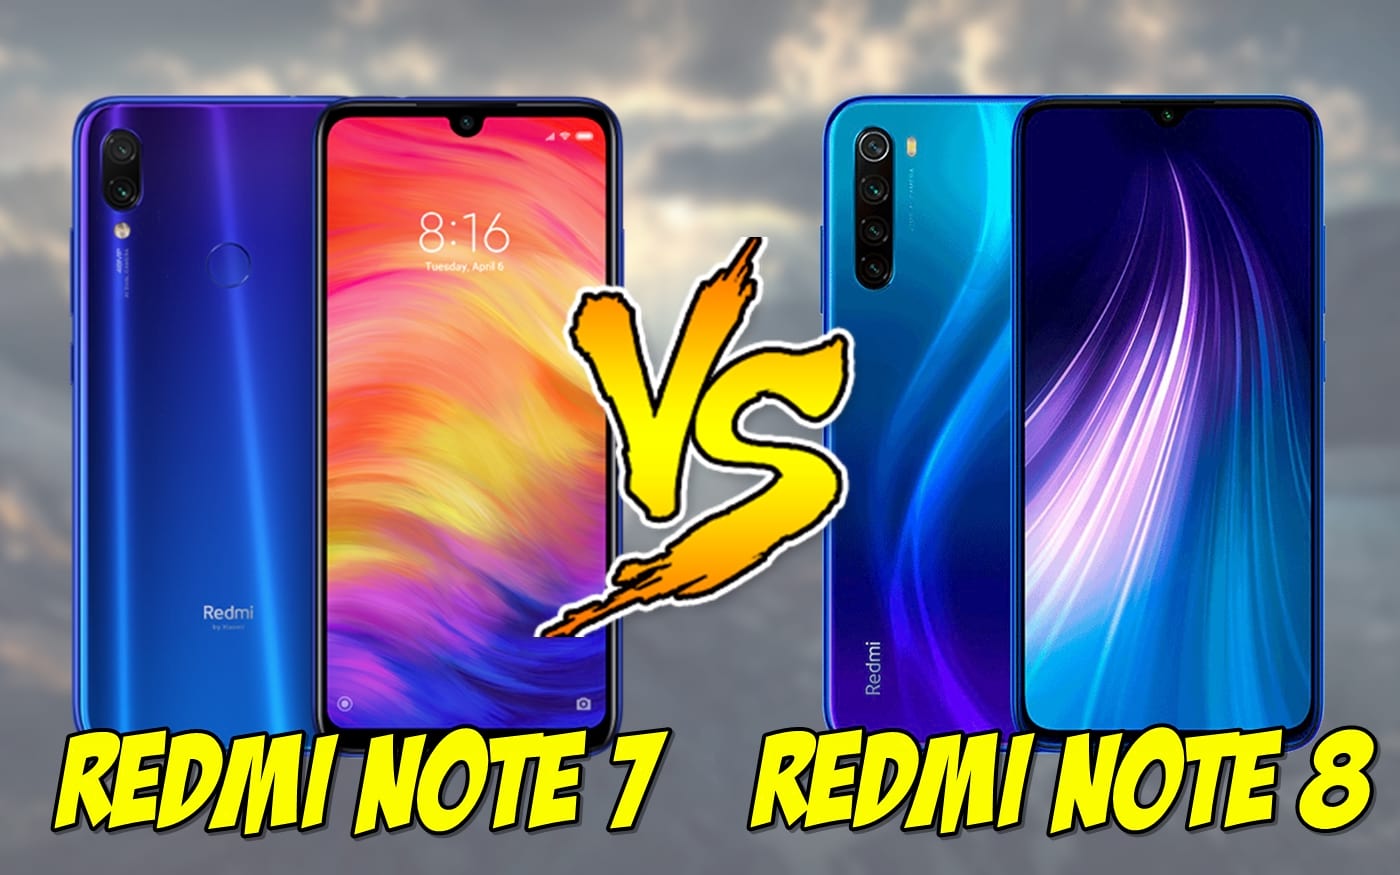 Redmi 7 vs Redmi Note 7: quais são as diferenças? [Comparativo]